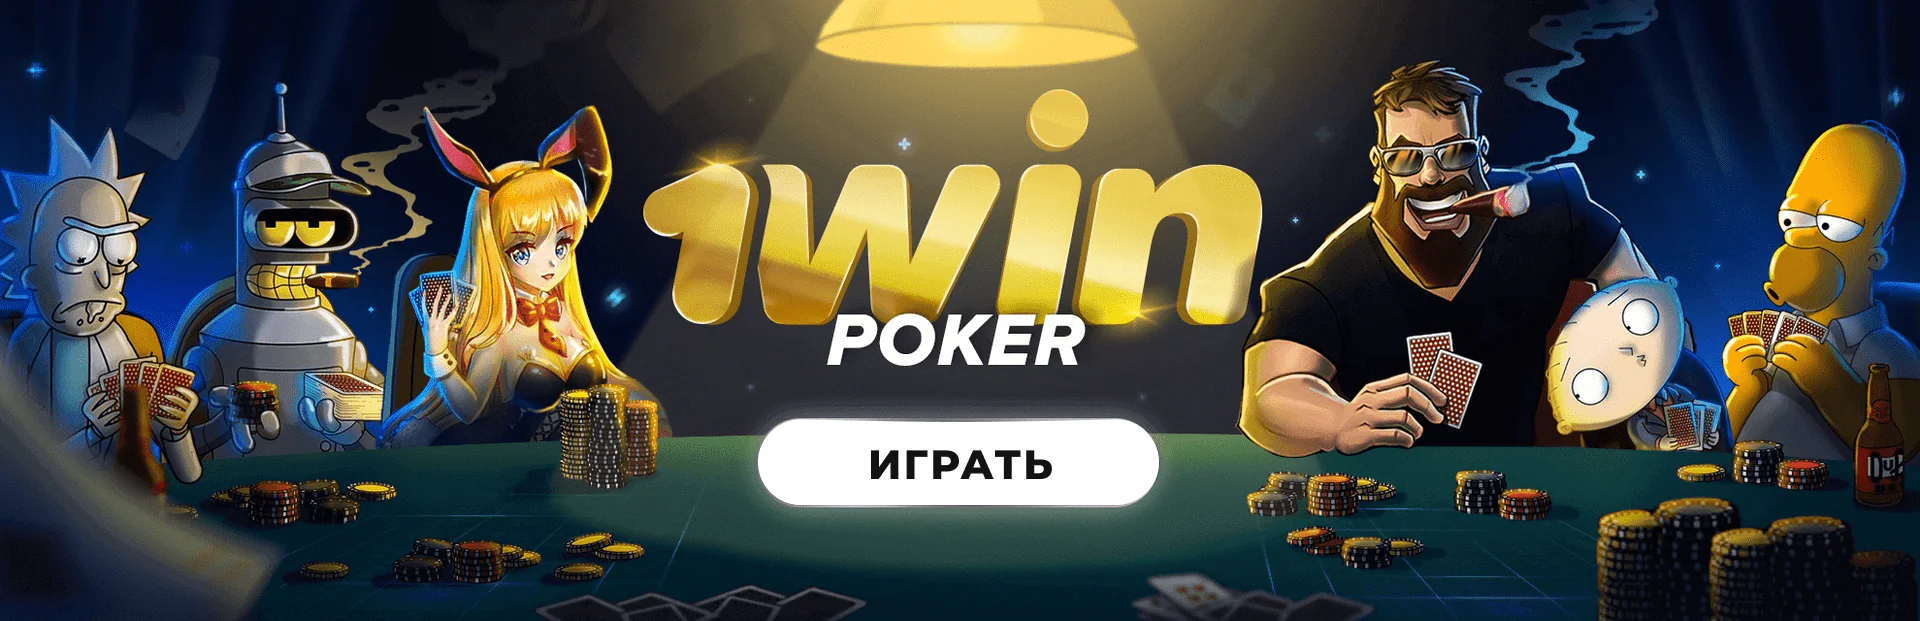 TrueLab производитель игр в казино 1вин Украина 🏆